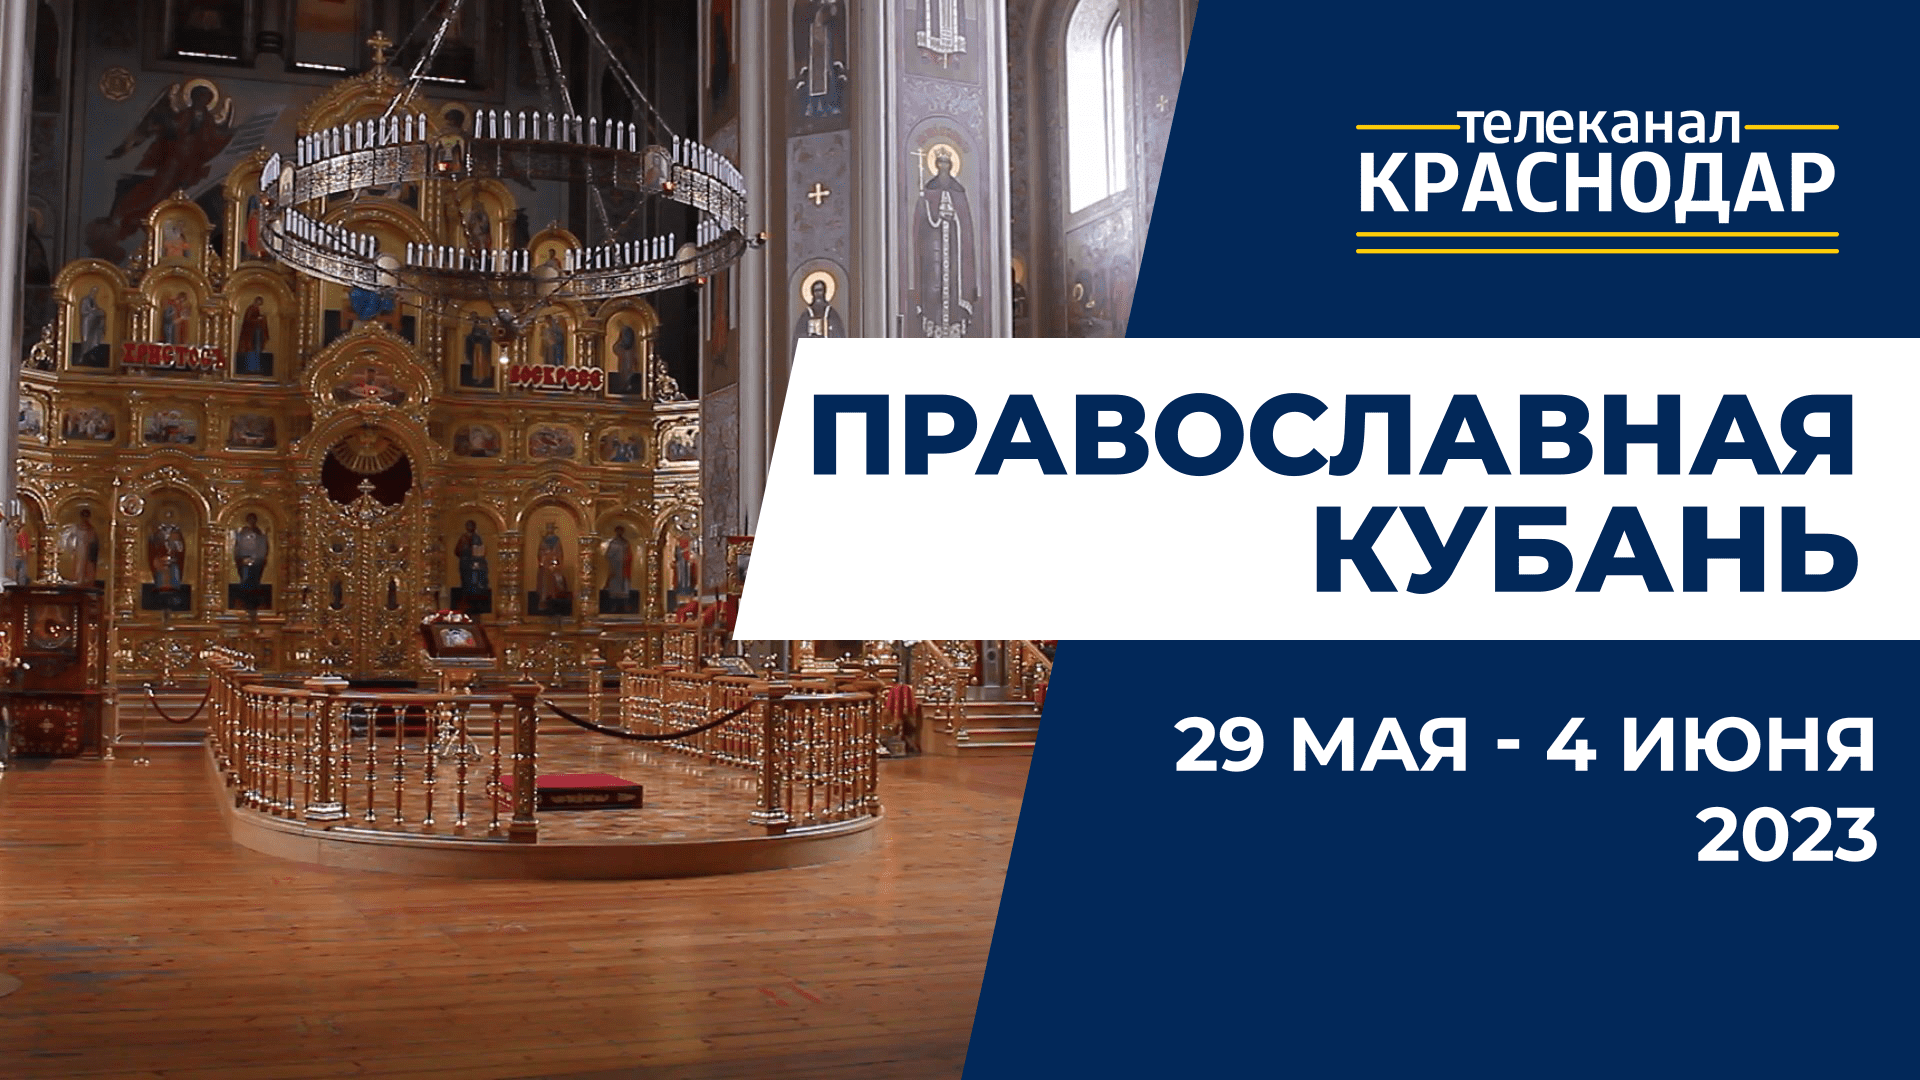 «Православная Кубань»: какие церковные праздники отмечают с 29 мая по 4 июня?